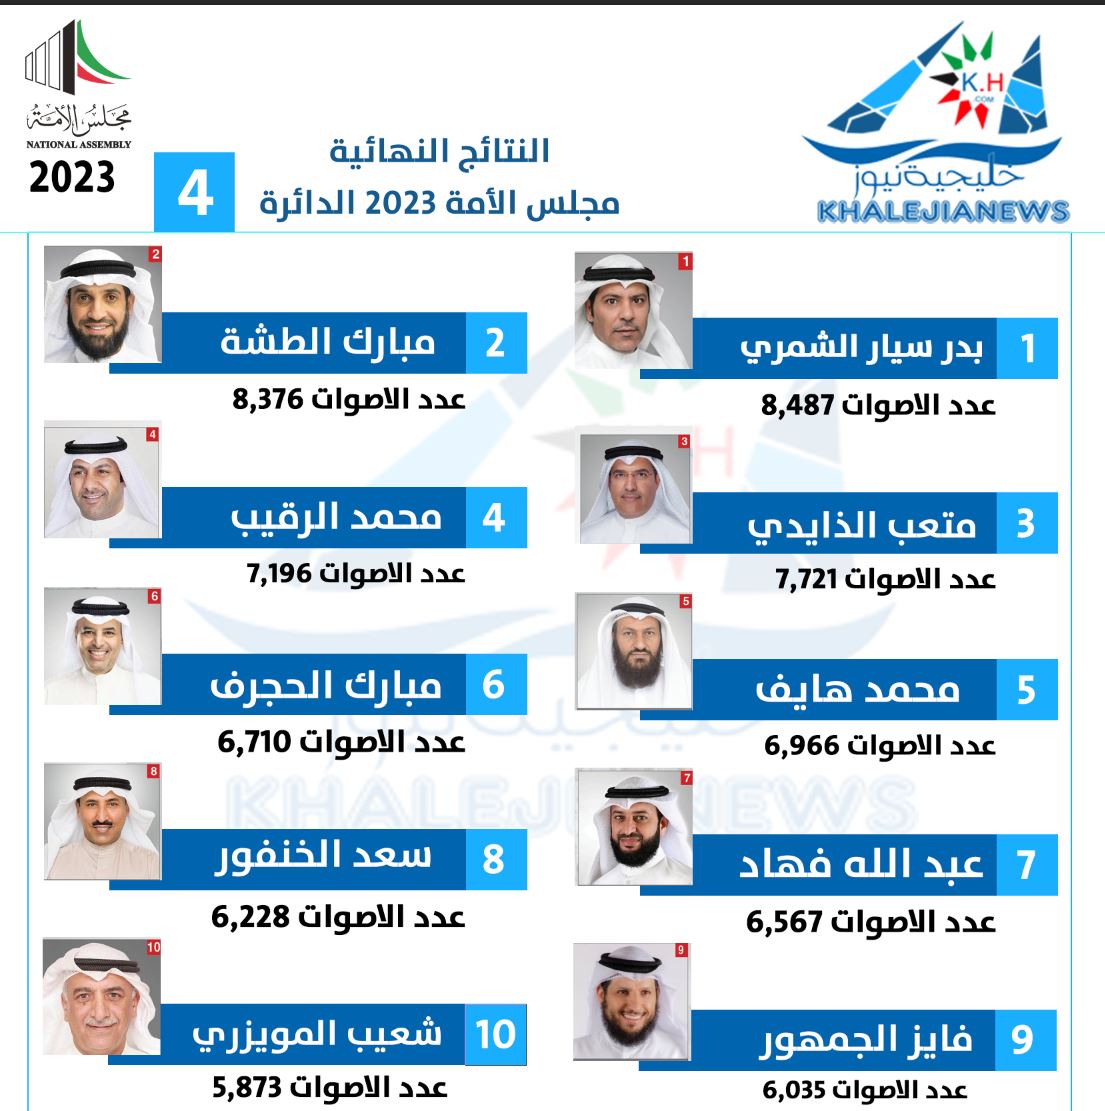 السير الذاتية للفائزين بعضوية مجلس الأمة الكويتي "أمة 2023" عن الدائرة الانتخابية الرابعة